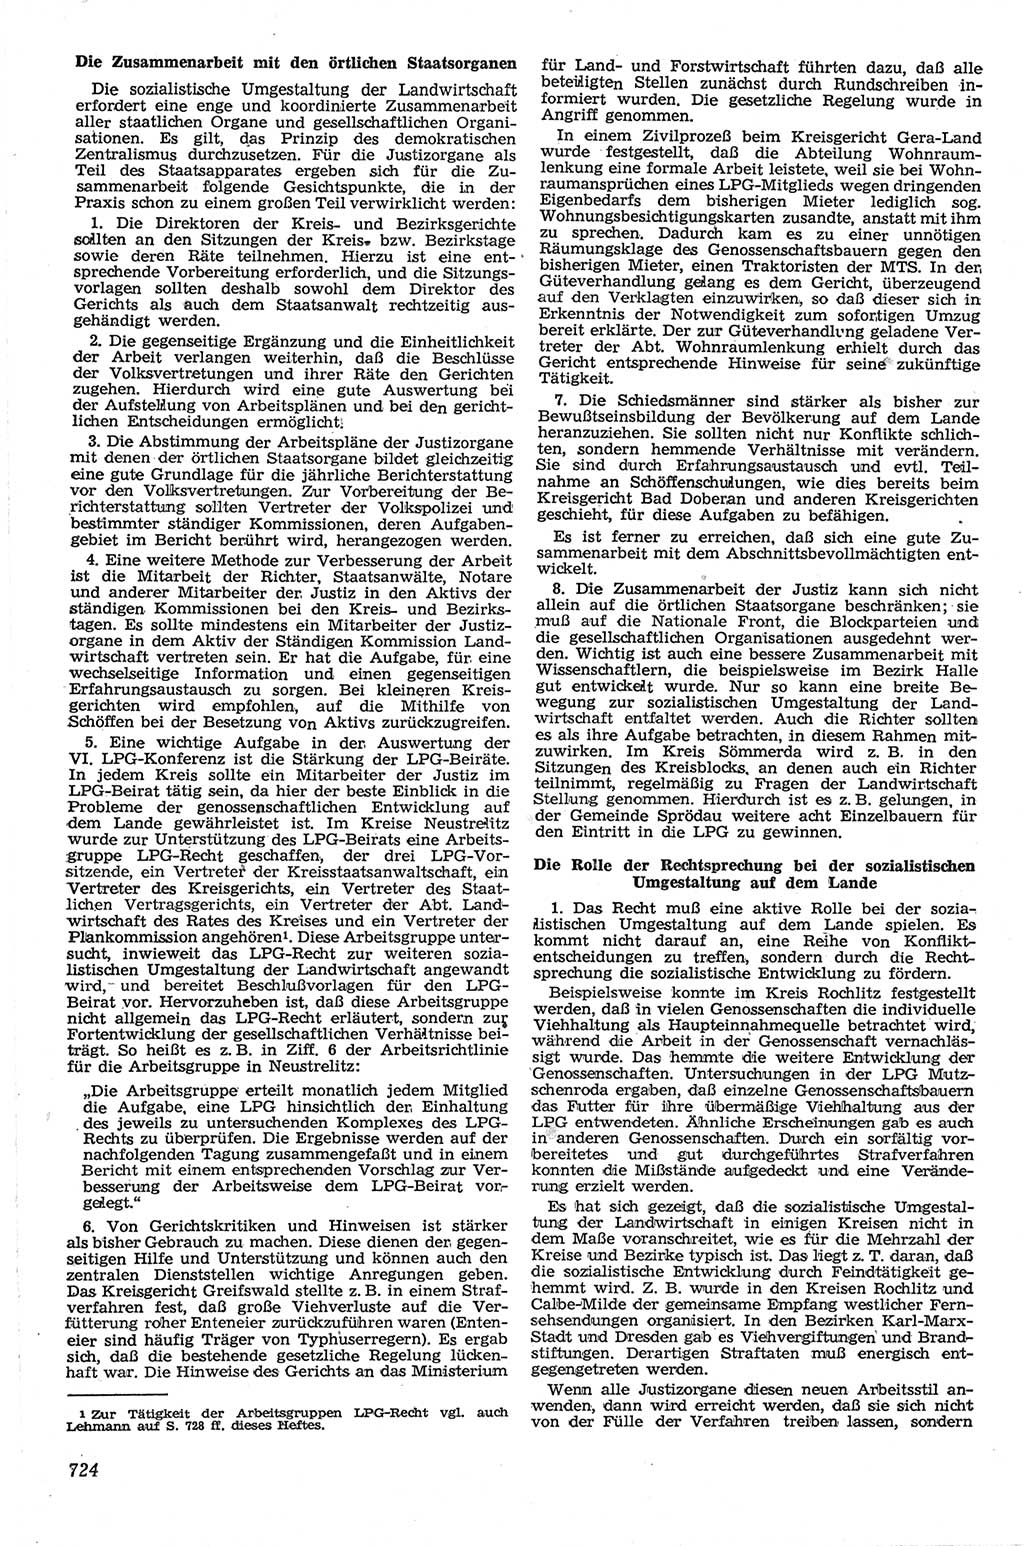 Neue Justiz (NJ), Zeitschrift für Recht und Rechtswissenschaft [Deutsche Demokratische Republik (DDR)], 13. Jahrgang 1959, Seite 724 (NJ DDR 1959, S. 724)